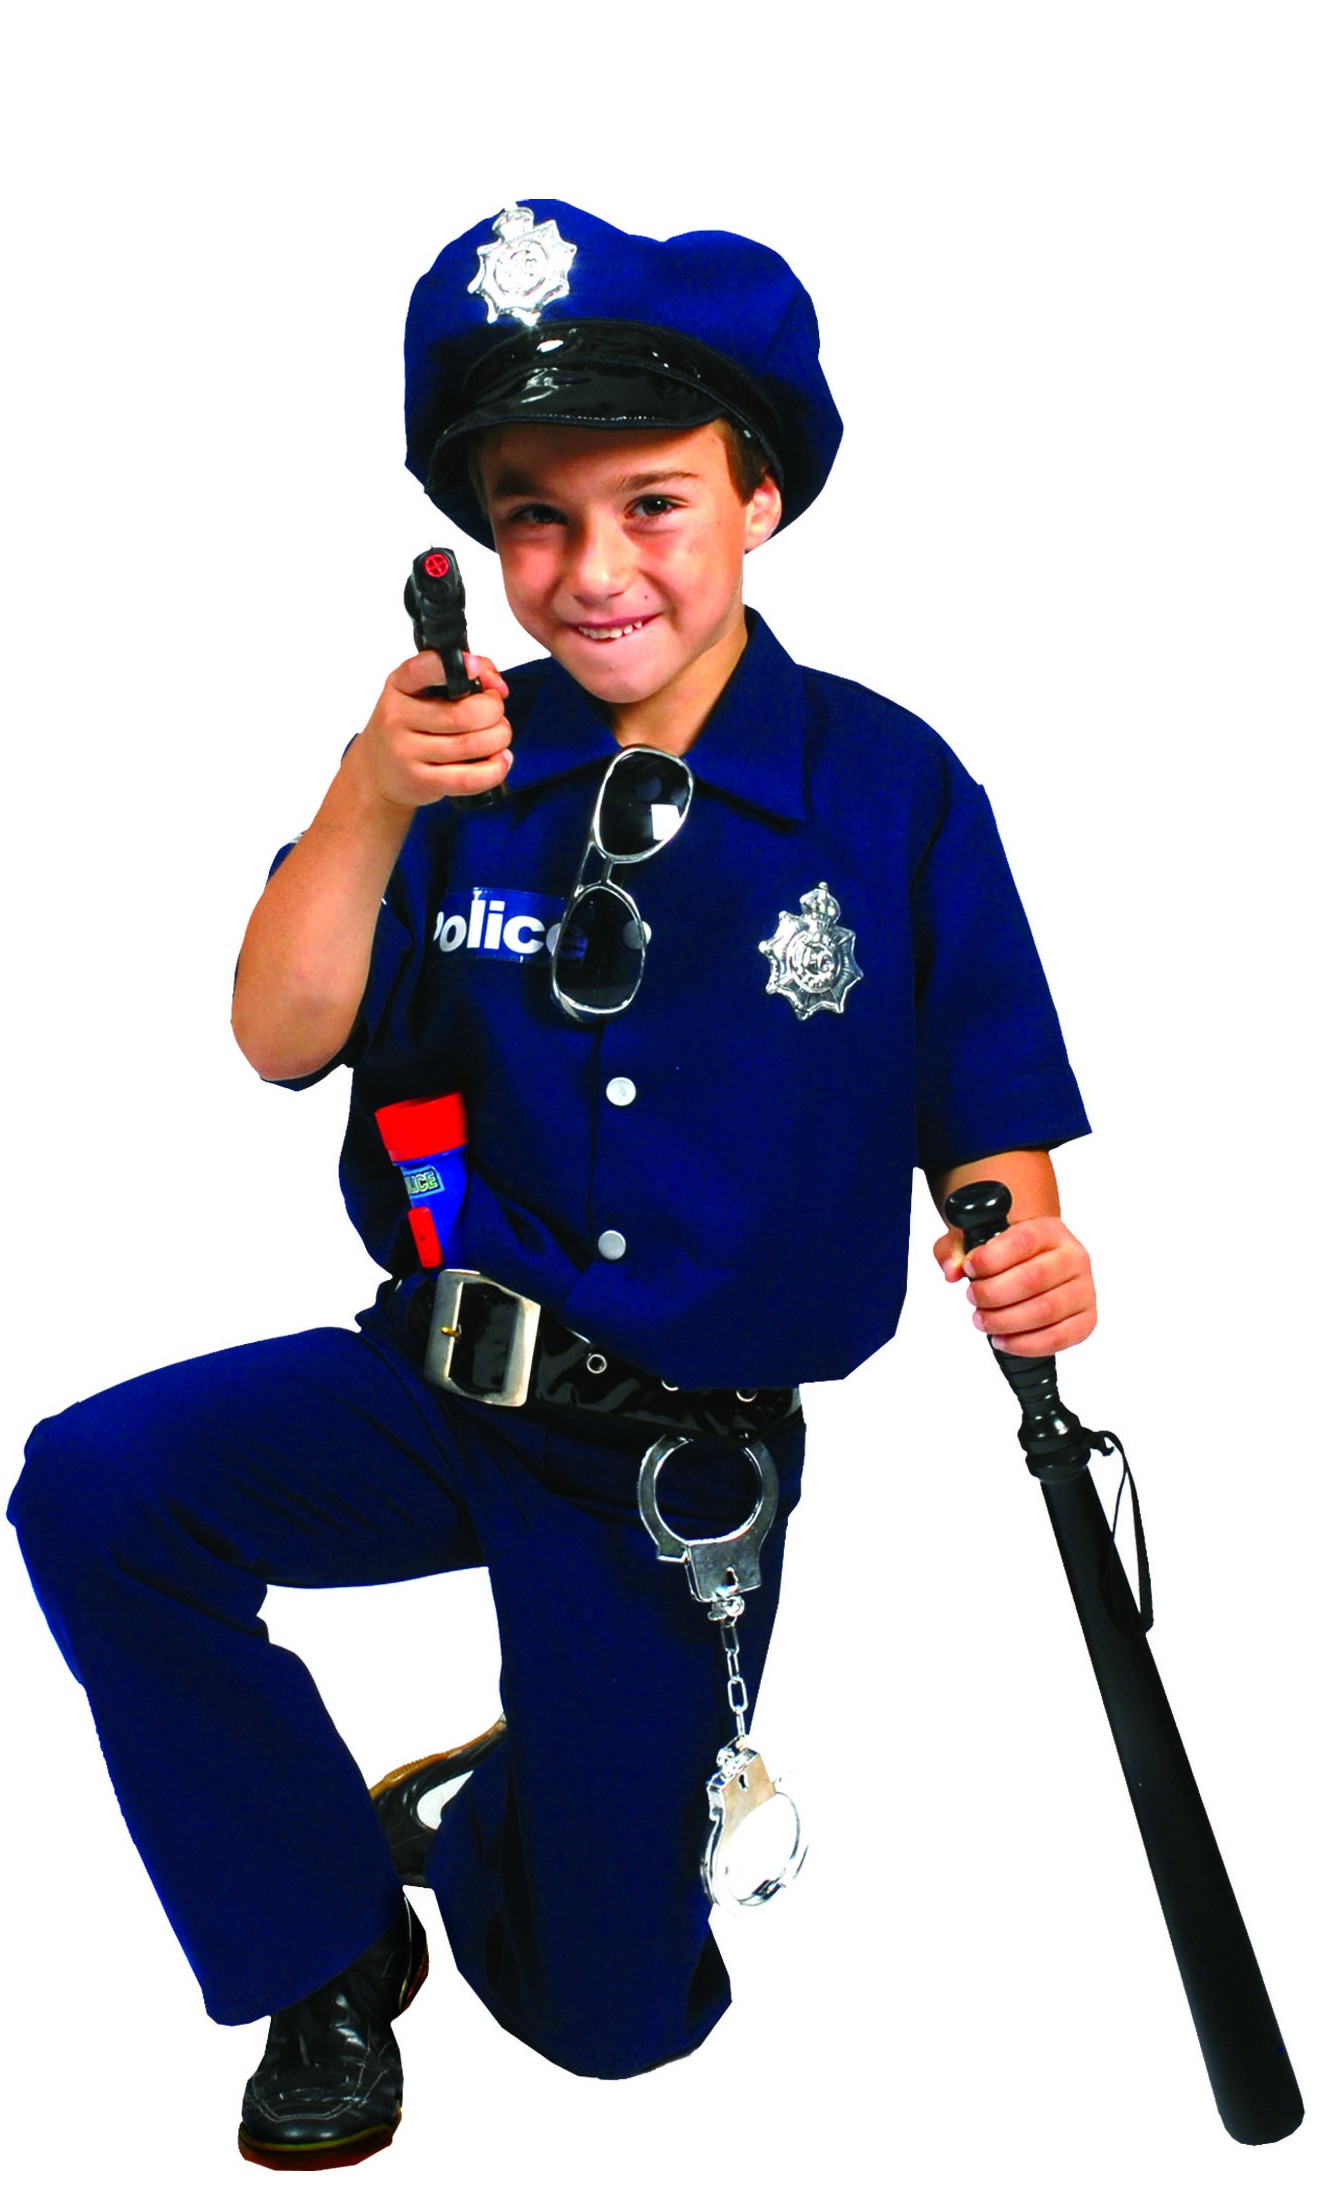 Déguisement de police pour un enfant